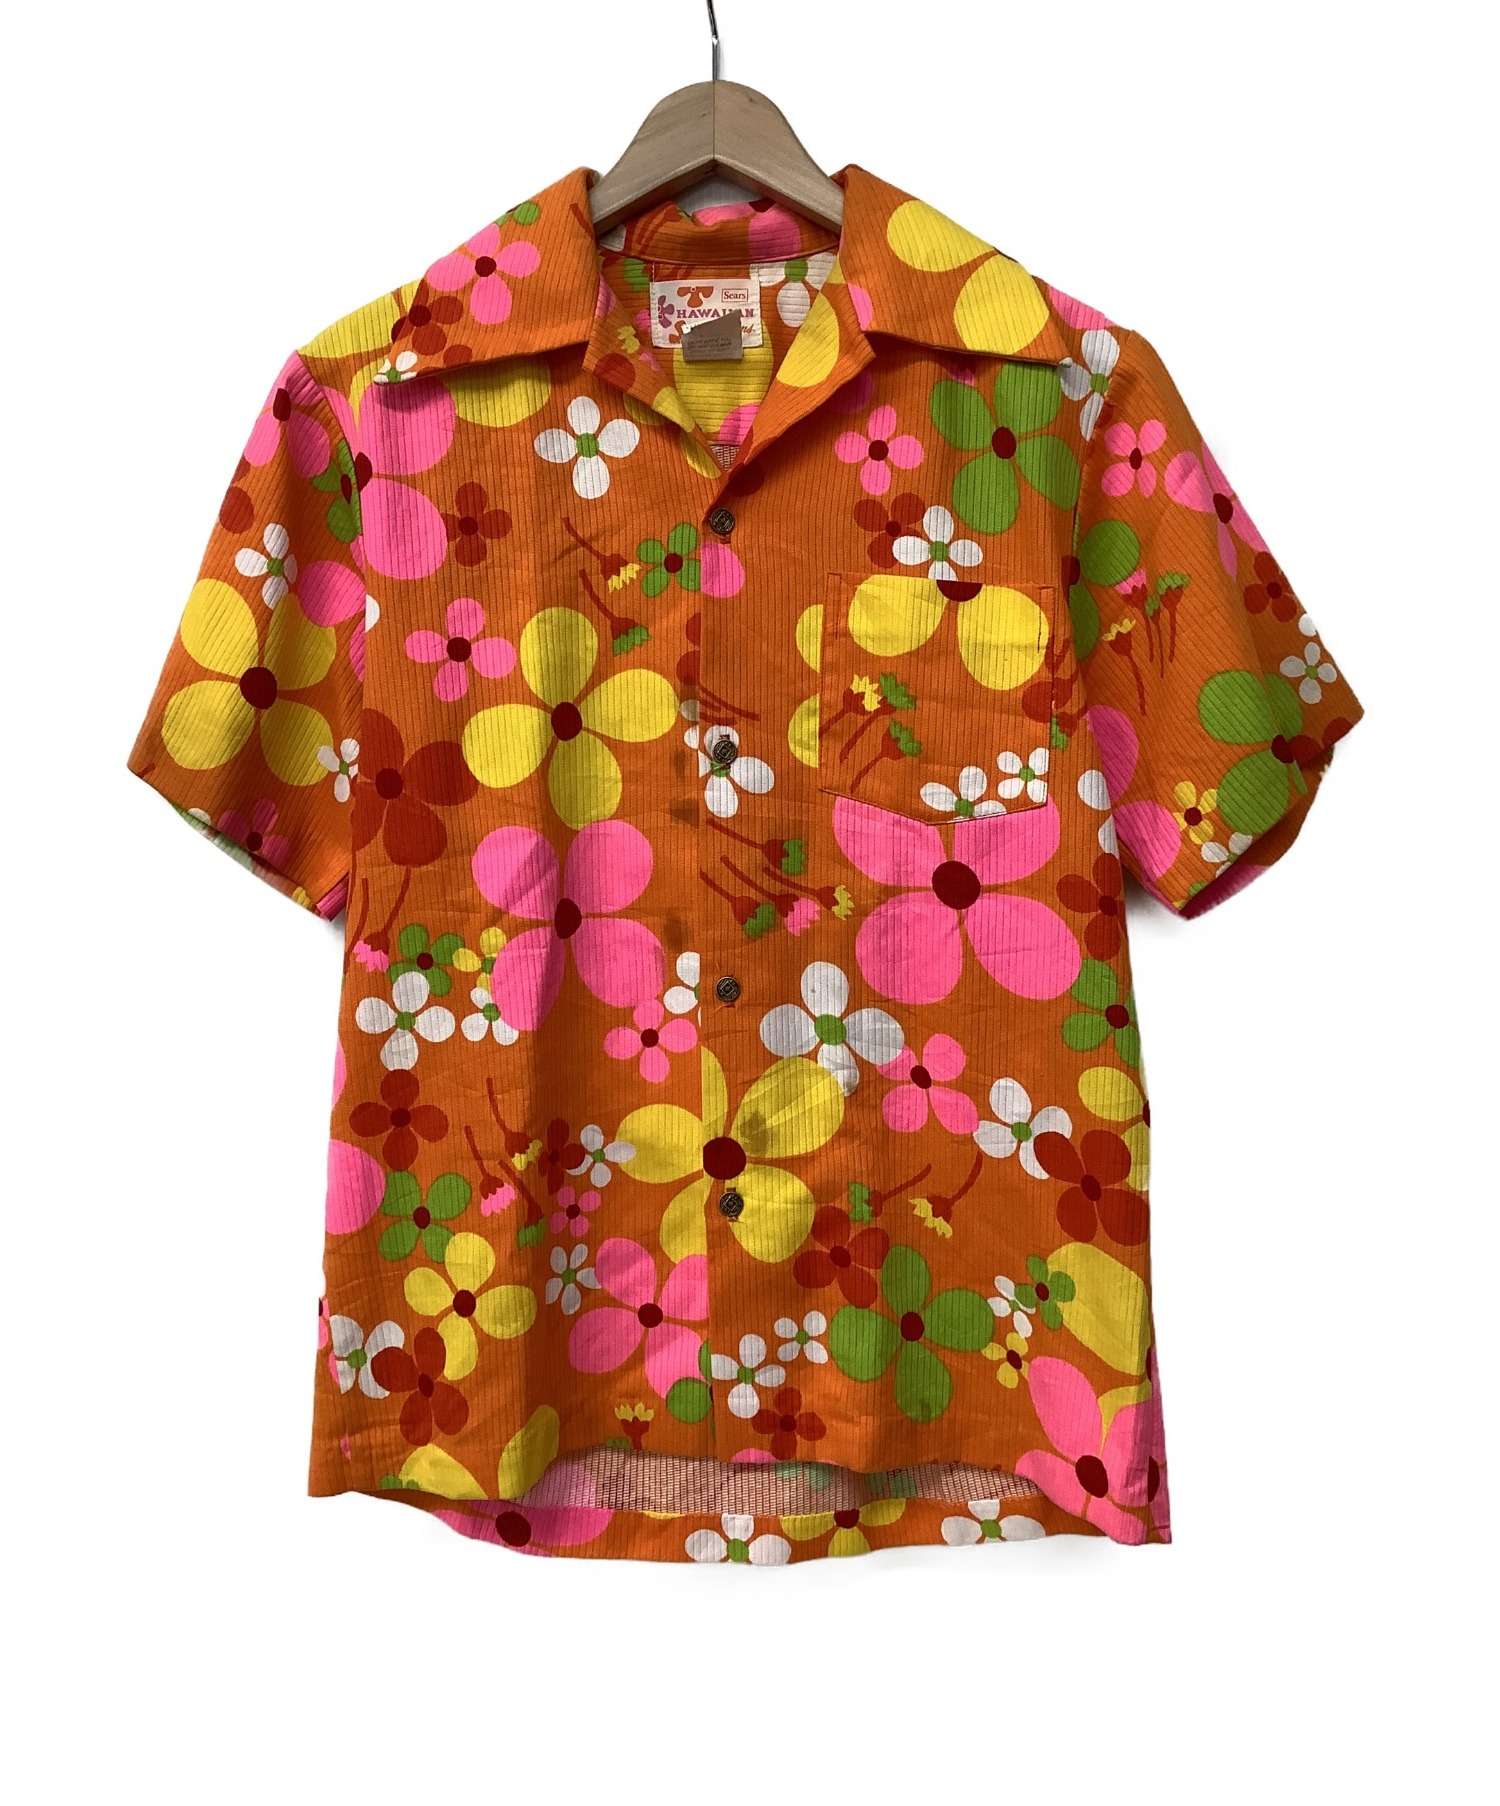 Sears (シアーズ) 70sアロハシャツ オレンジ×ピンク サイズ:S